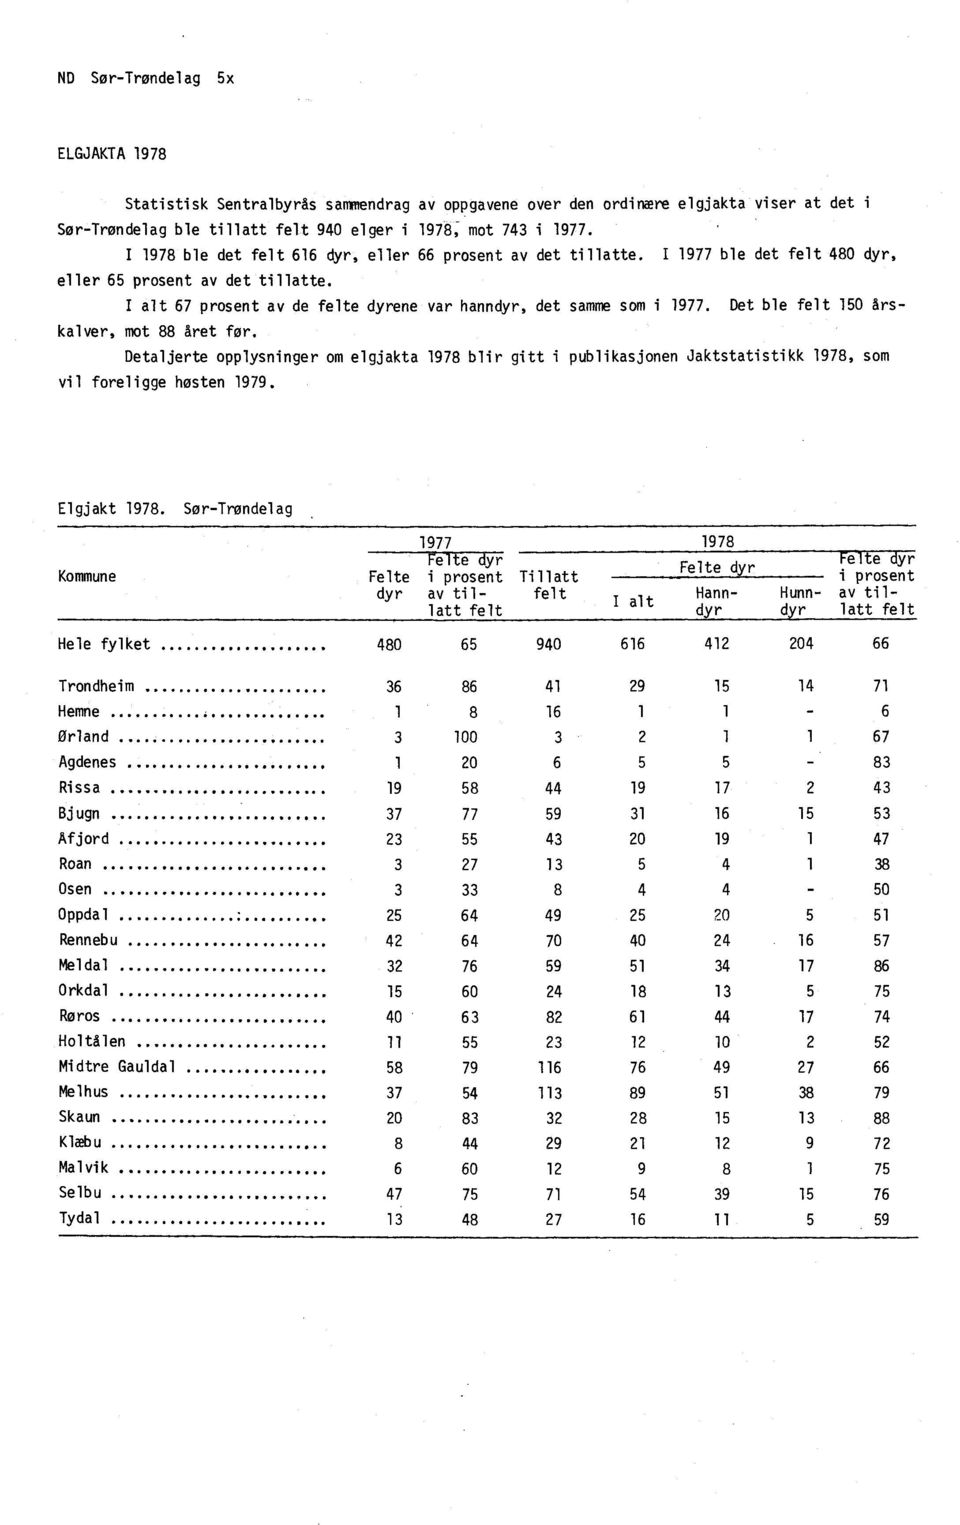 Det ble felt 150 Arskalver, mot 88 året for. Detaljerte opplysninger om elgjakta 1978 blir gitt i publikasjonen Jaktstatistikk 1978, som vil foreligge hosten 1979. Elgjakt 1978.